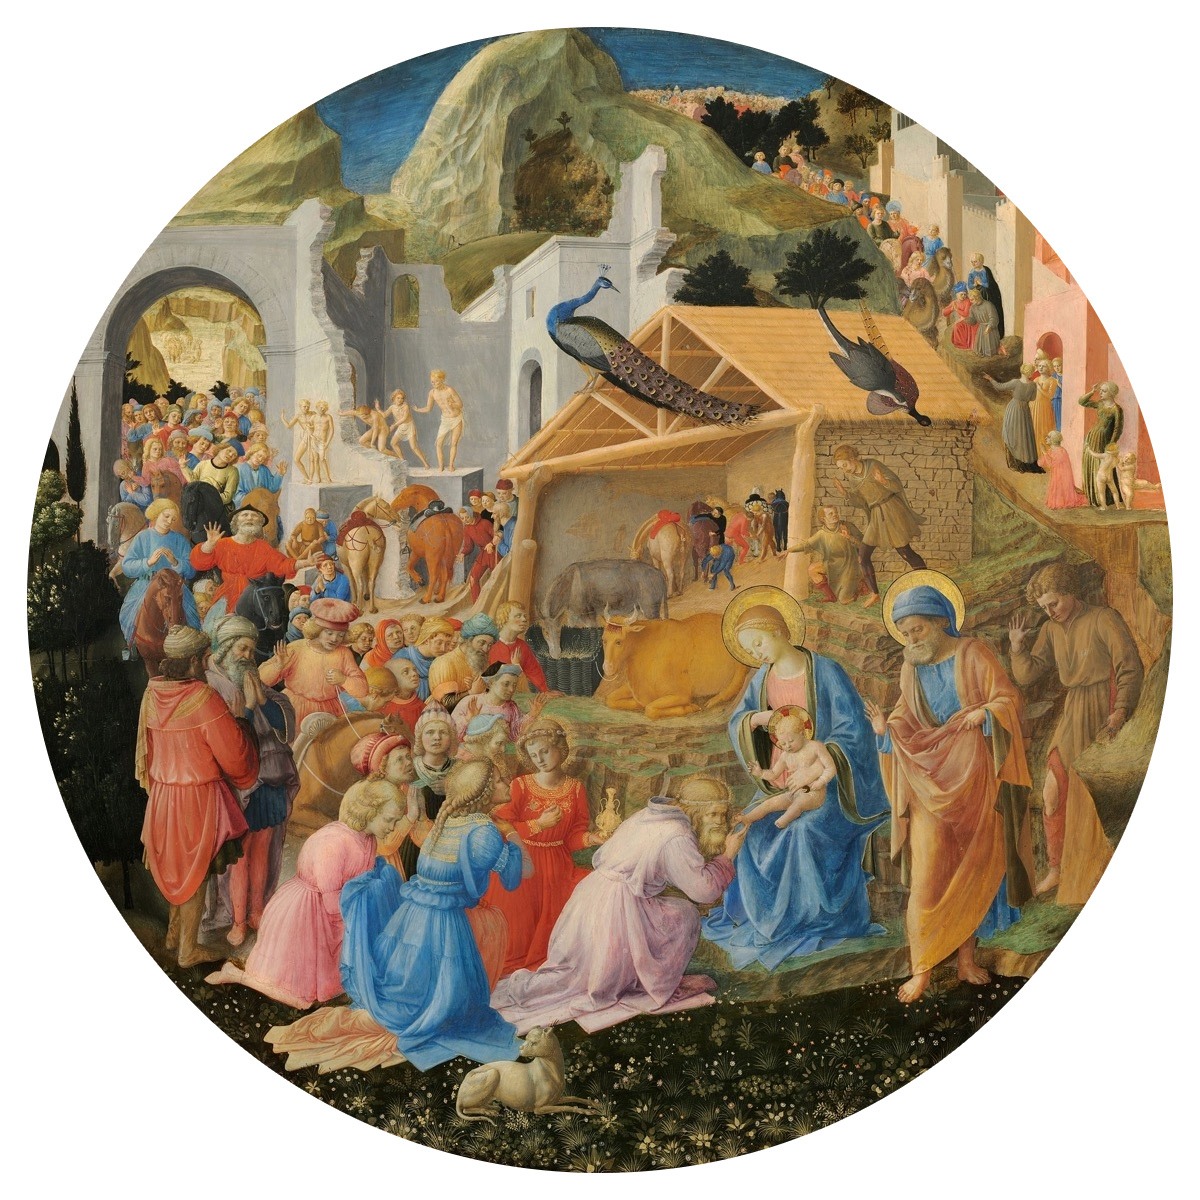 رسمها (فرا أنجيليكو) و(فيليبو ليبي) بين سنتي 1440 و60، وهي لوحة من الفن المسيحي بعنوان «افتتان المجوس».